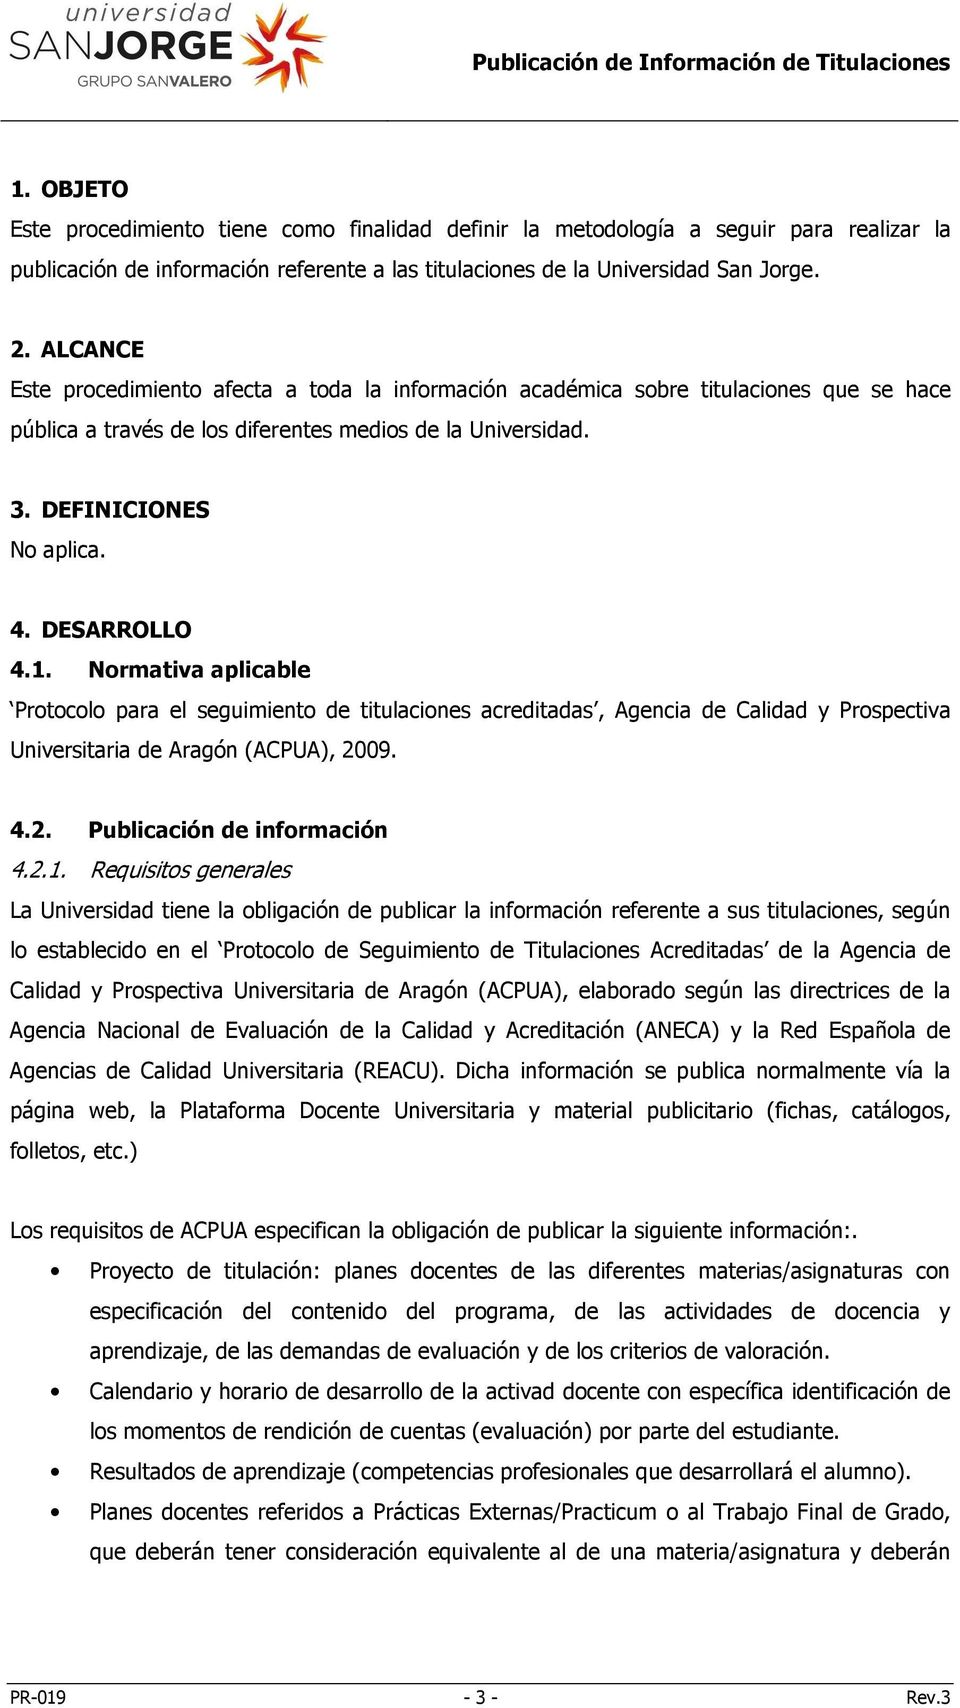 DESARROLLO 4.1. Normativa aplicable Protocolo para el seguimiento de titulaciones acreditadas, Agencia de Calidad y Prospectiva Universitaria de Aragón (ACPUA), 2009. 4.2. Publicación de información 4.